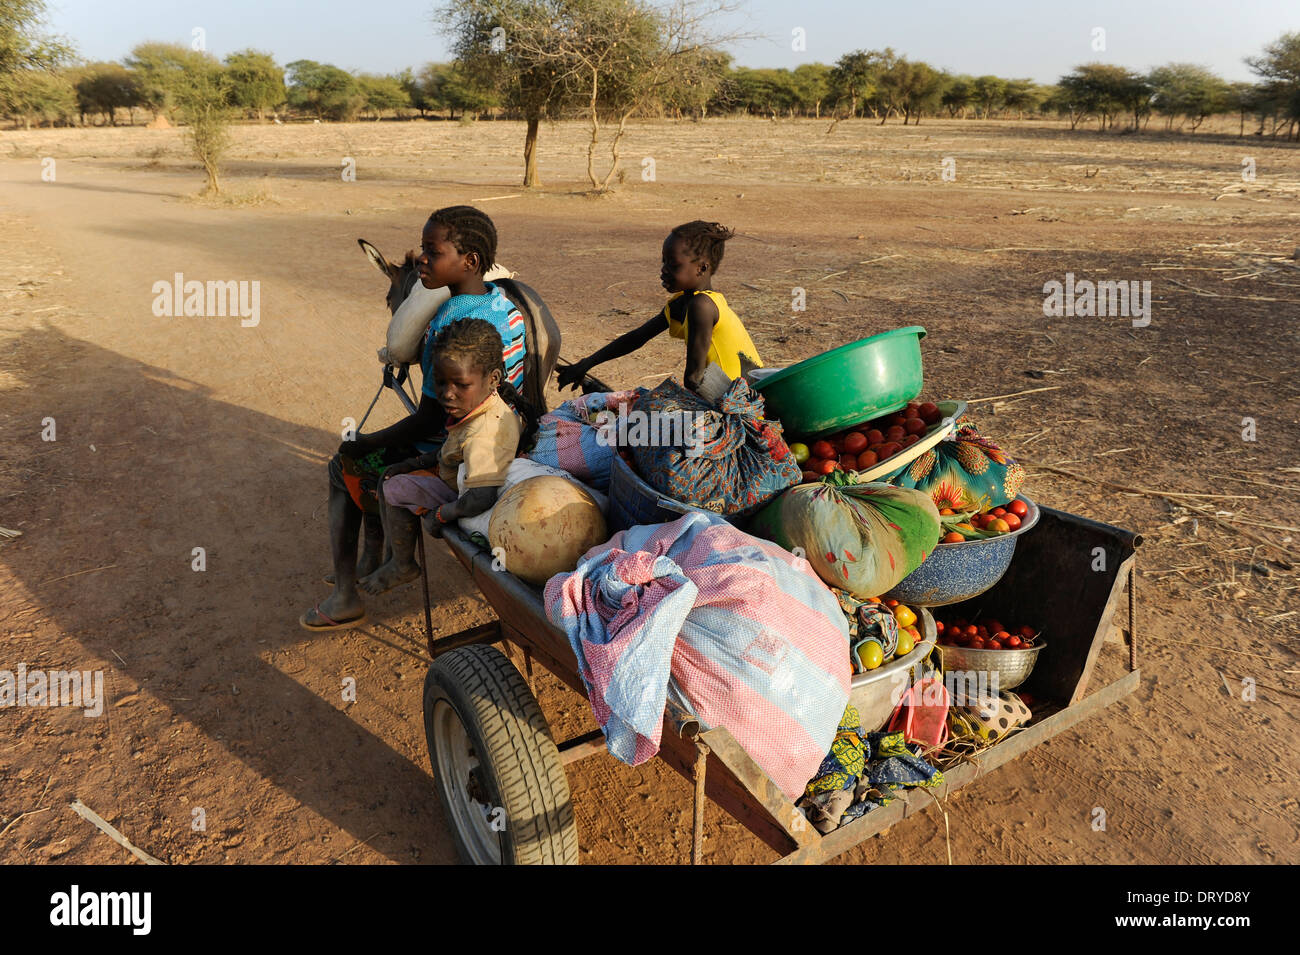 Burkina FASO Kaya, les enfants transportent des légumes avec un chariot âne de la ferme au marché, les ânes sont une cible des acheteurs chinois pour l'exportation pour produire de la gélantine à partir de la peau âne pour extraire Ejiao pour la médecine chinoise traditionnelle TCM Banque D'Images